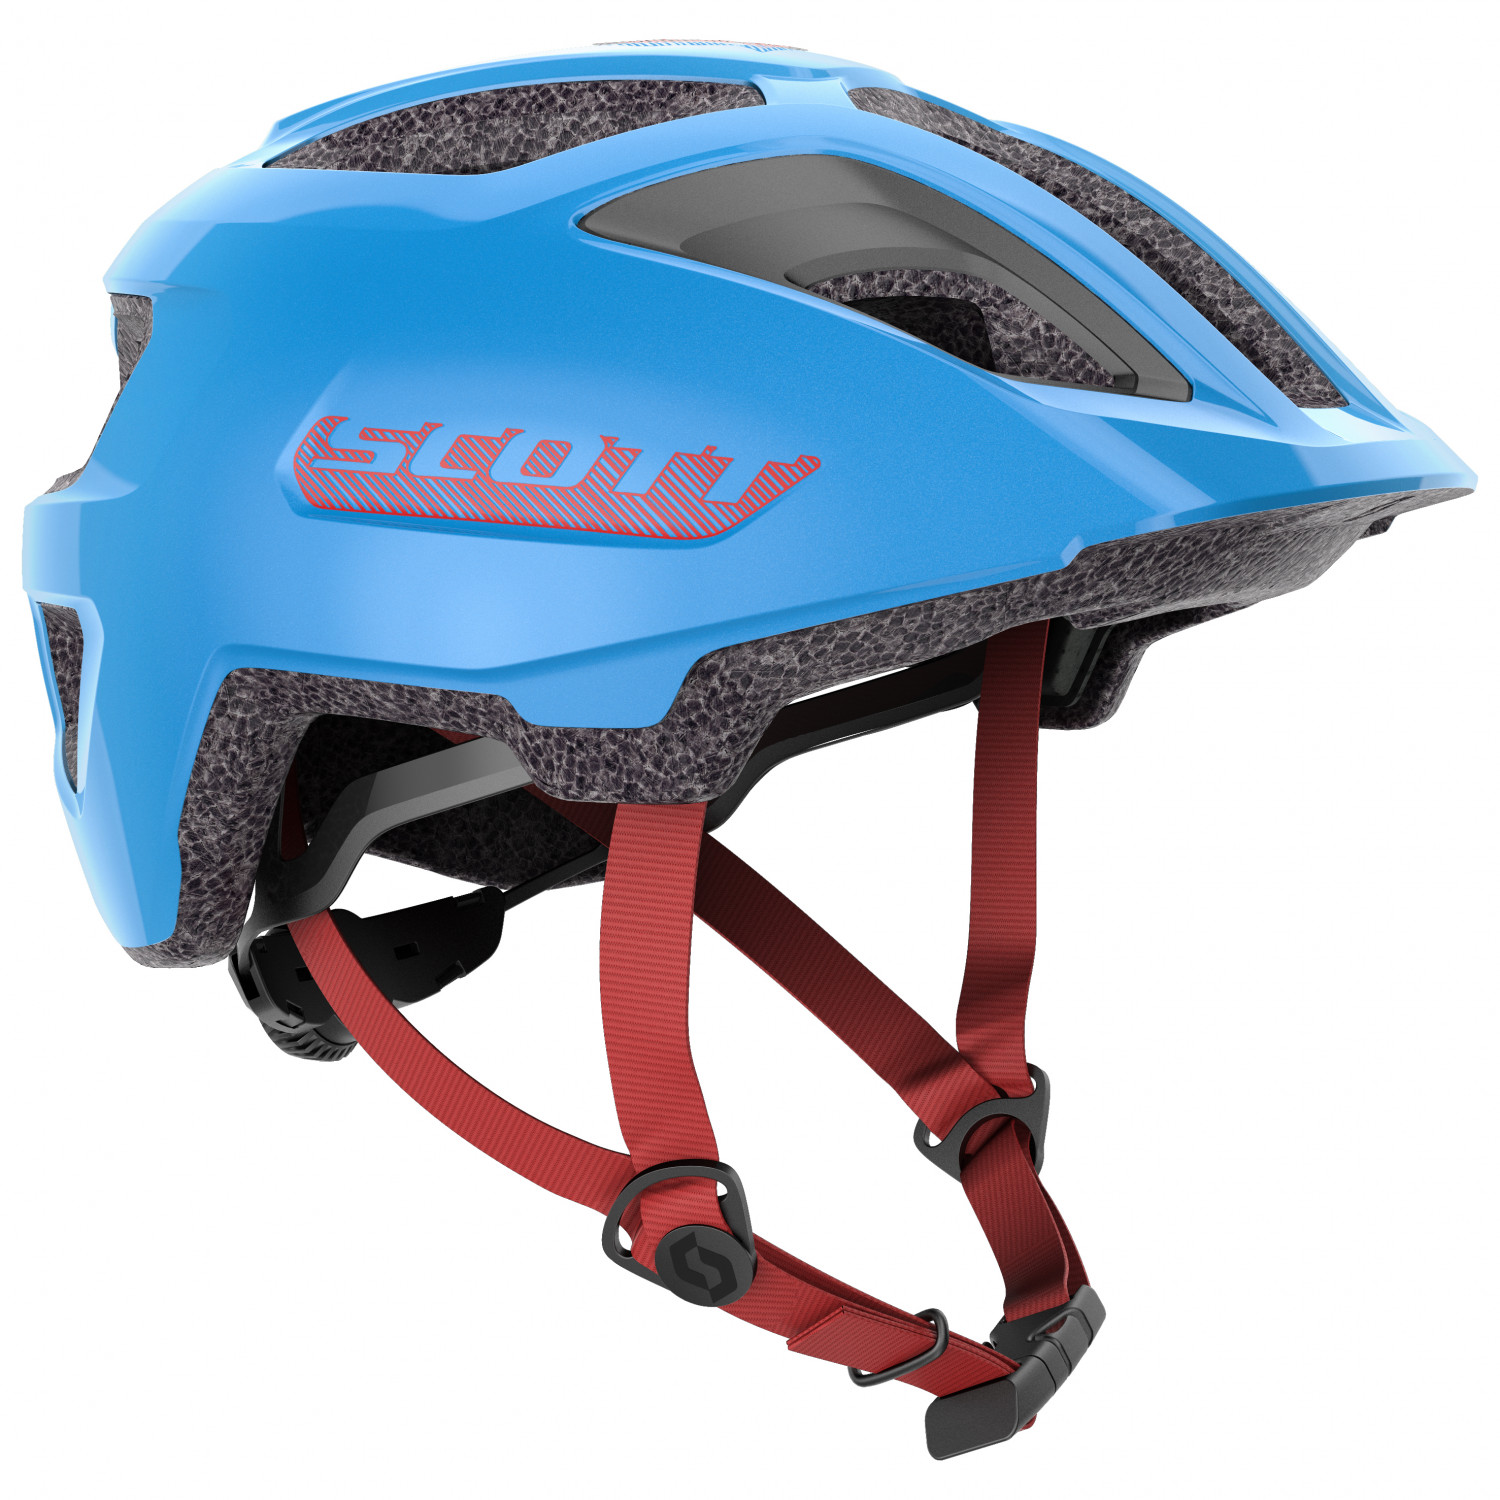 Велосипедный шлем Scott Kid's Helmet Spunto (CE) Junior, цвет Atlantic Blue шлем scott spunto kid ce atlantic blue